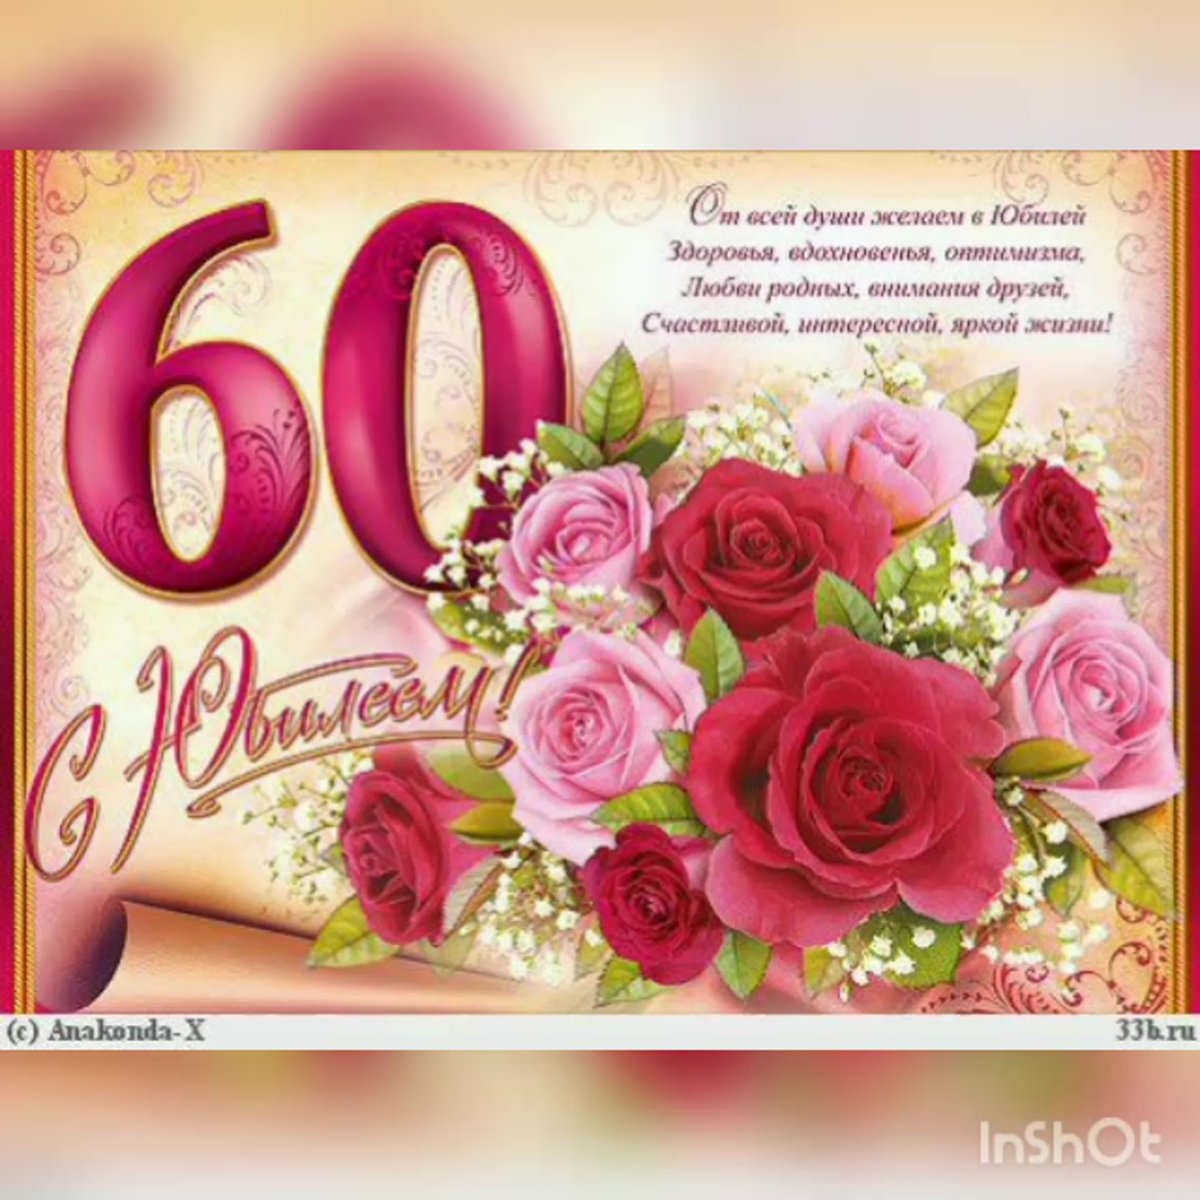 Поздравления жены с юбилеем на татарском